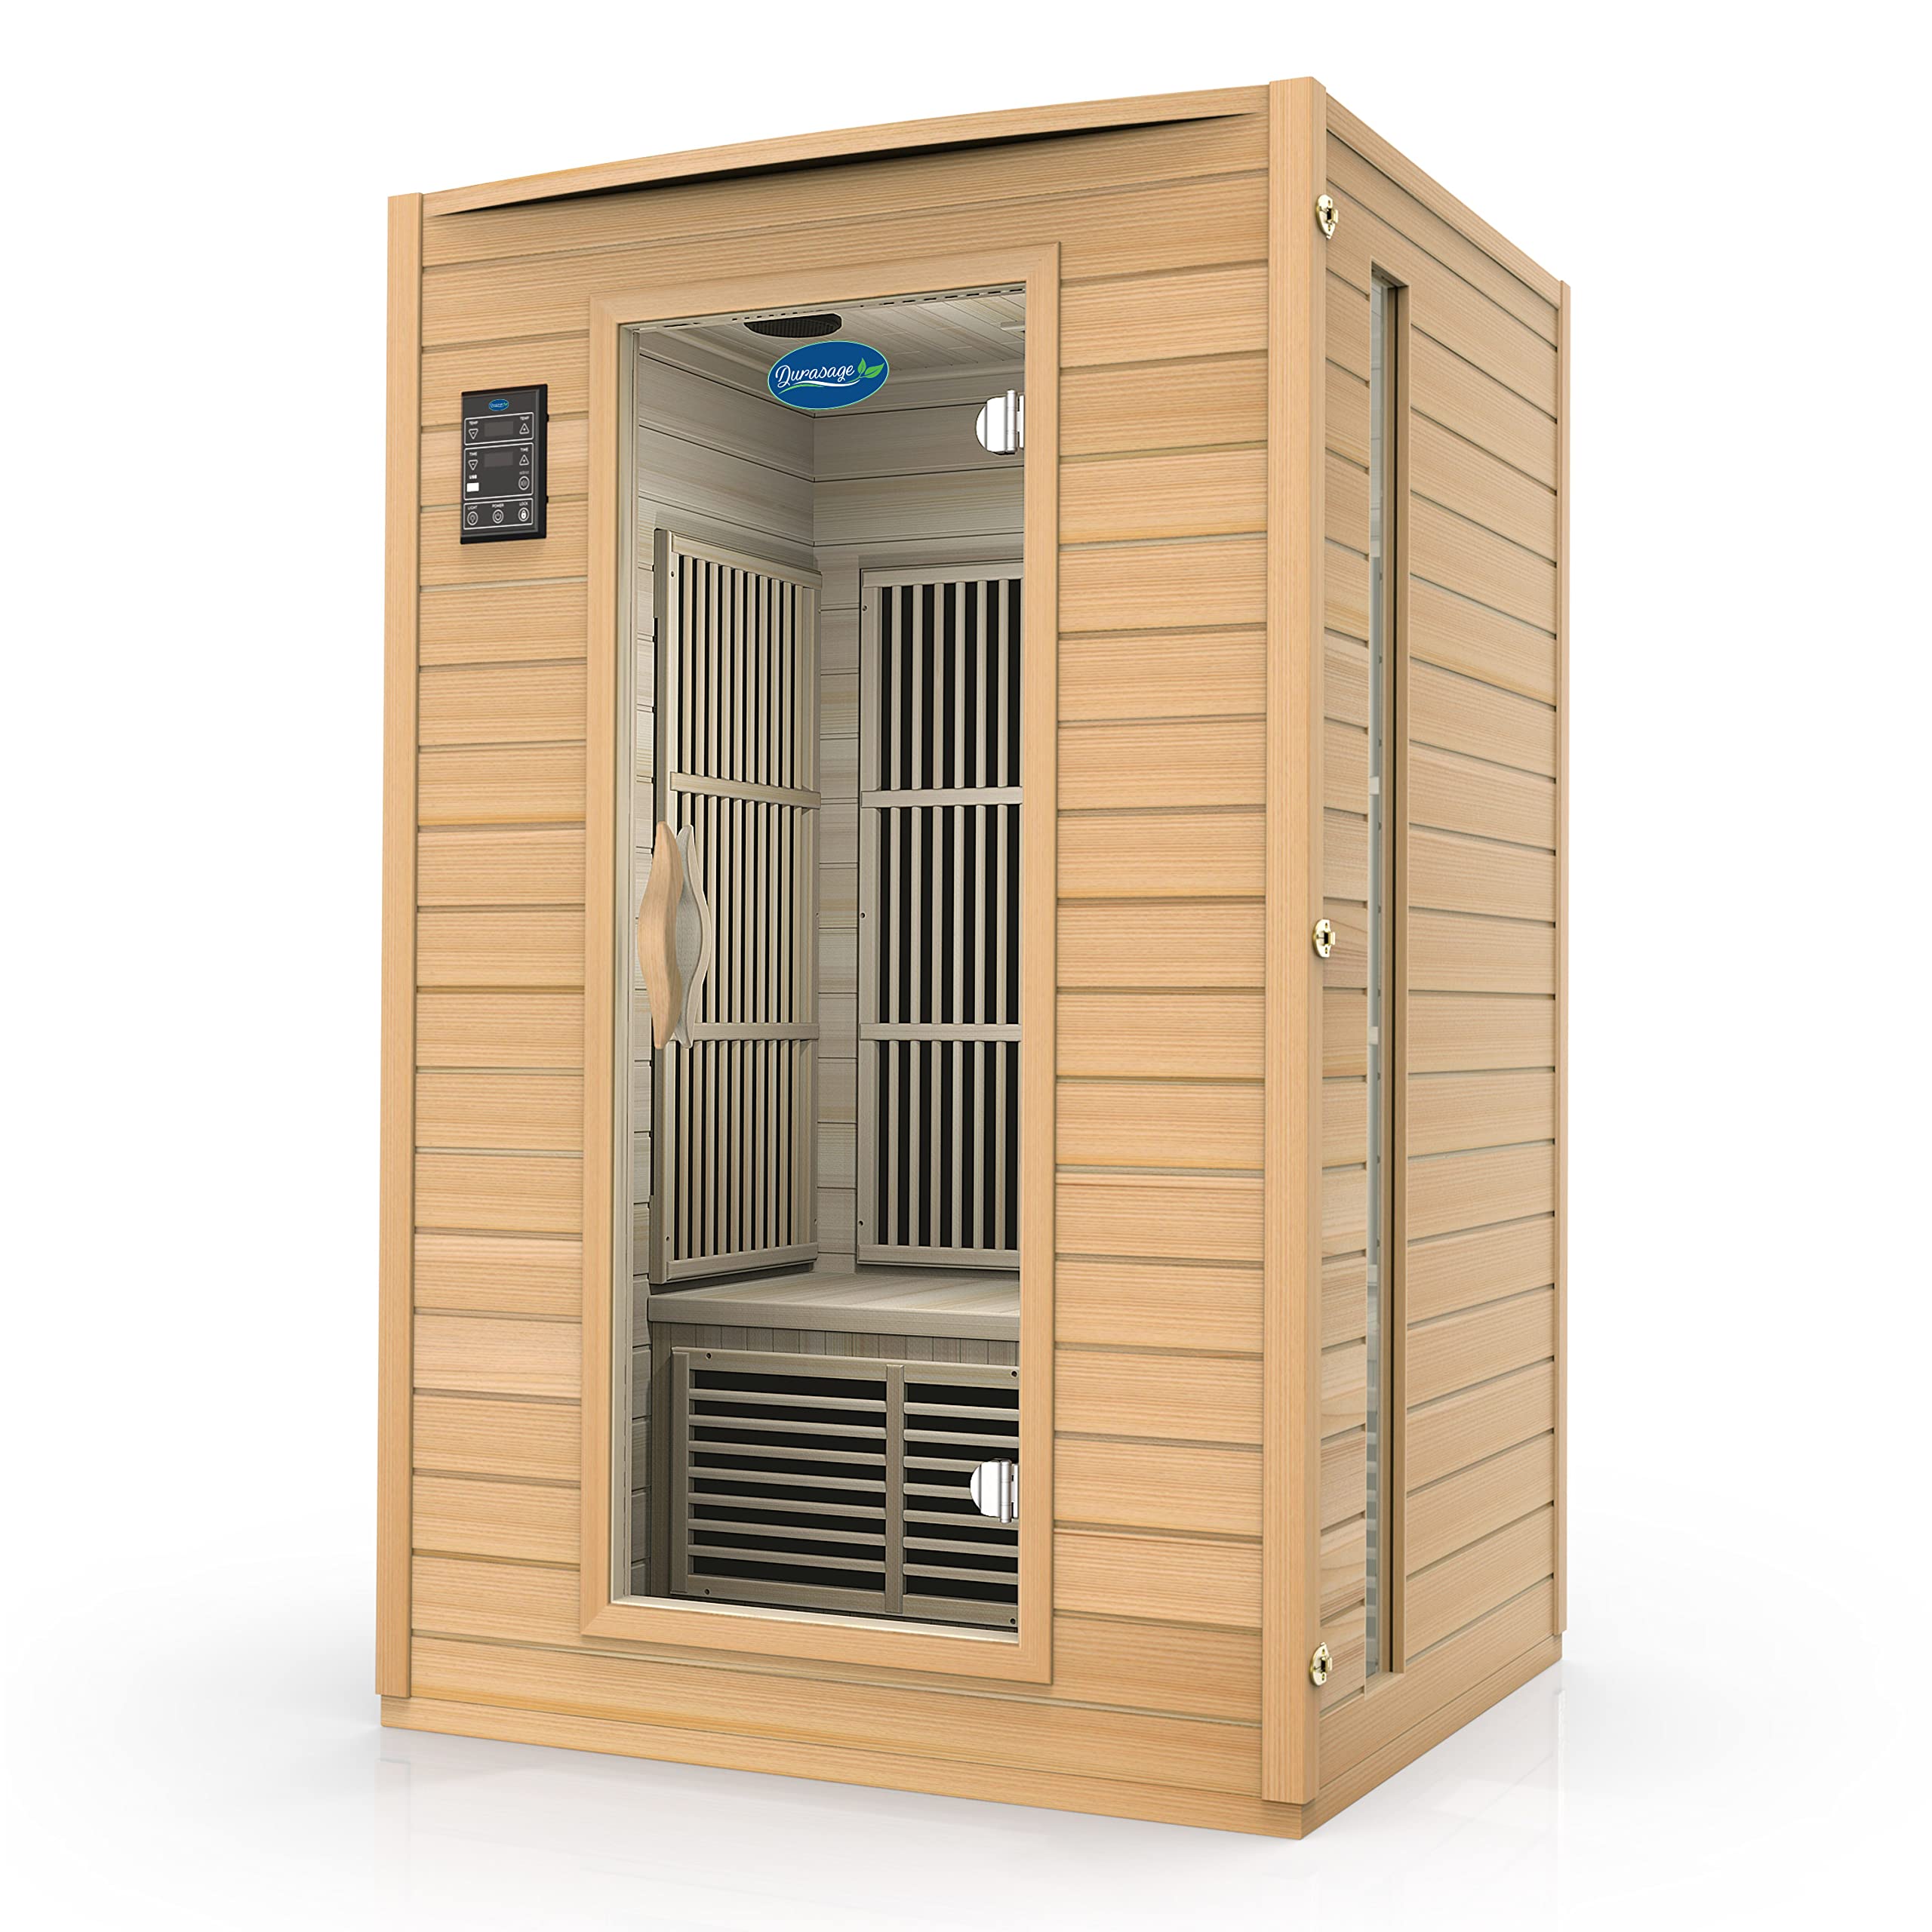 Durasage 2-Person Carbon Infrared Sauna - Canadian Hemlock Wooden Sauna - 1700 Watts - Premium Stereo Sound